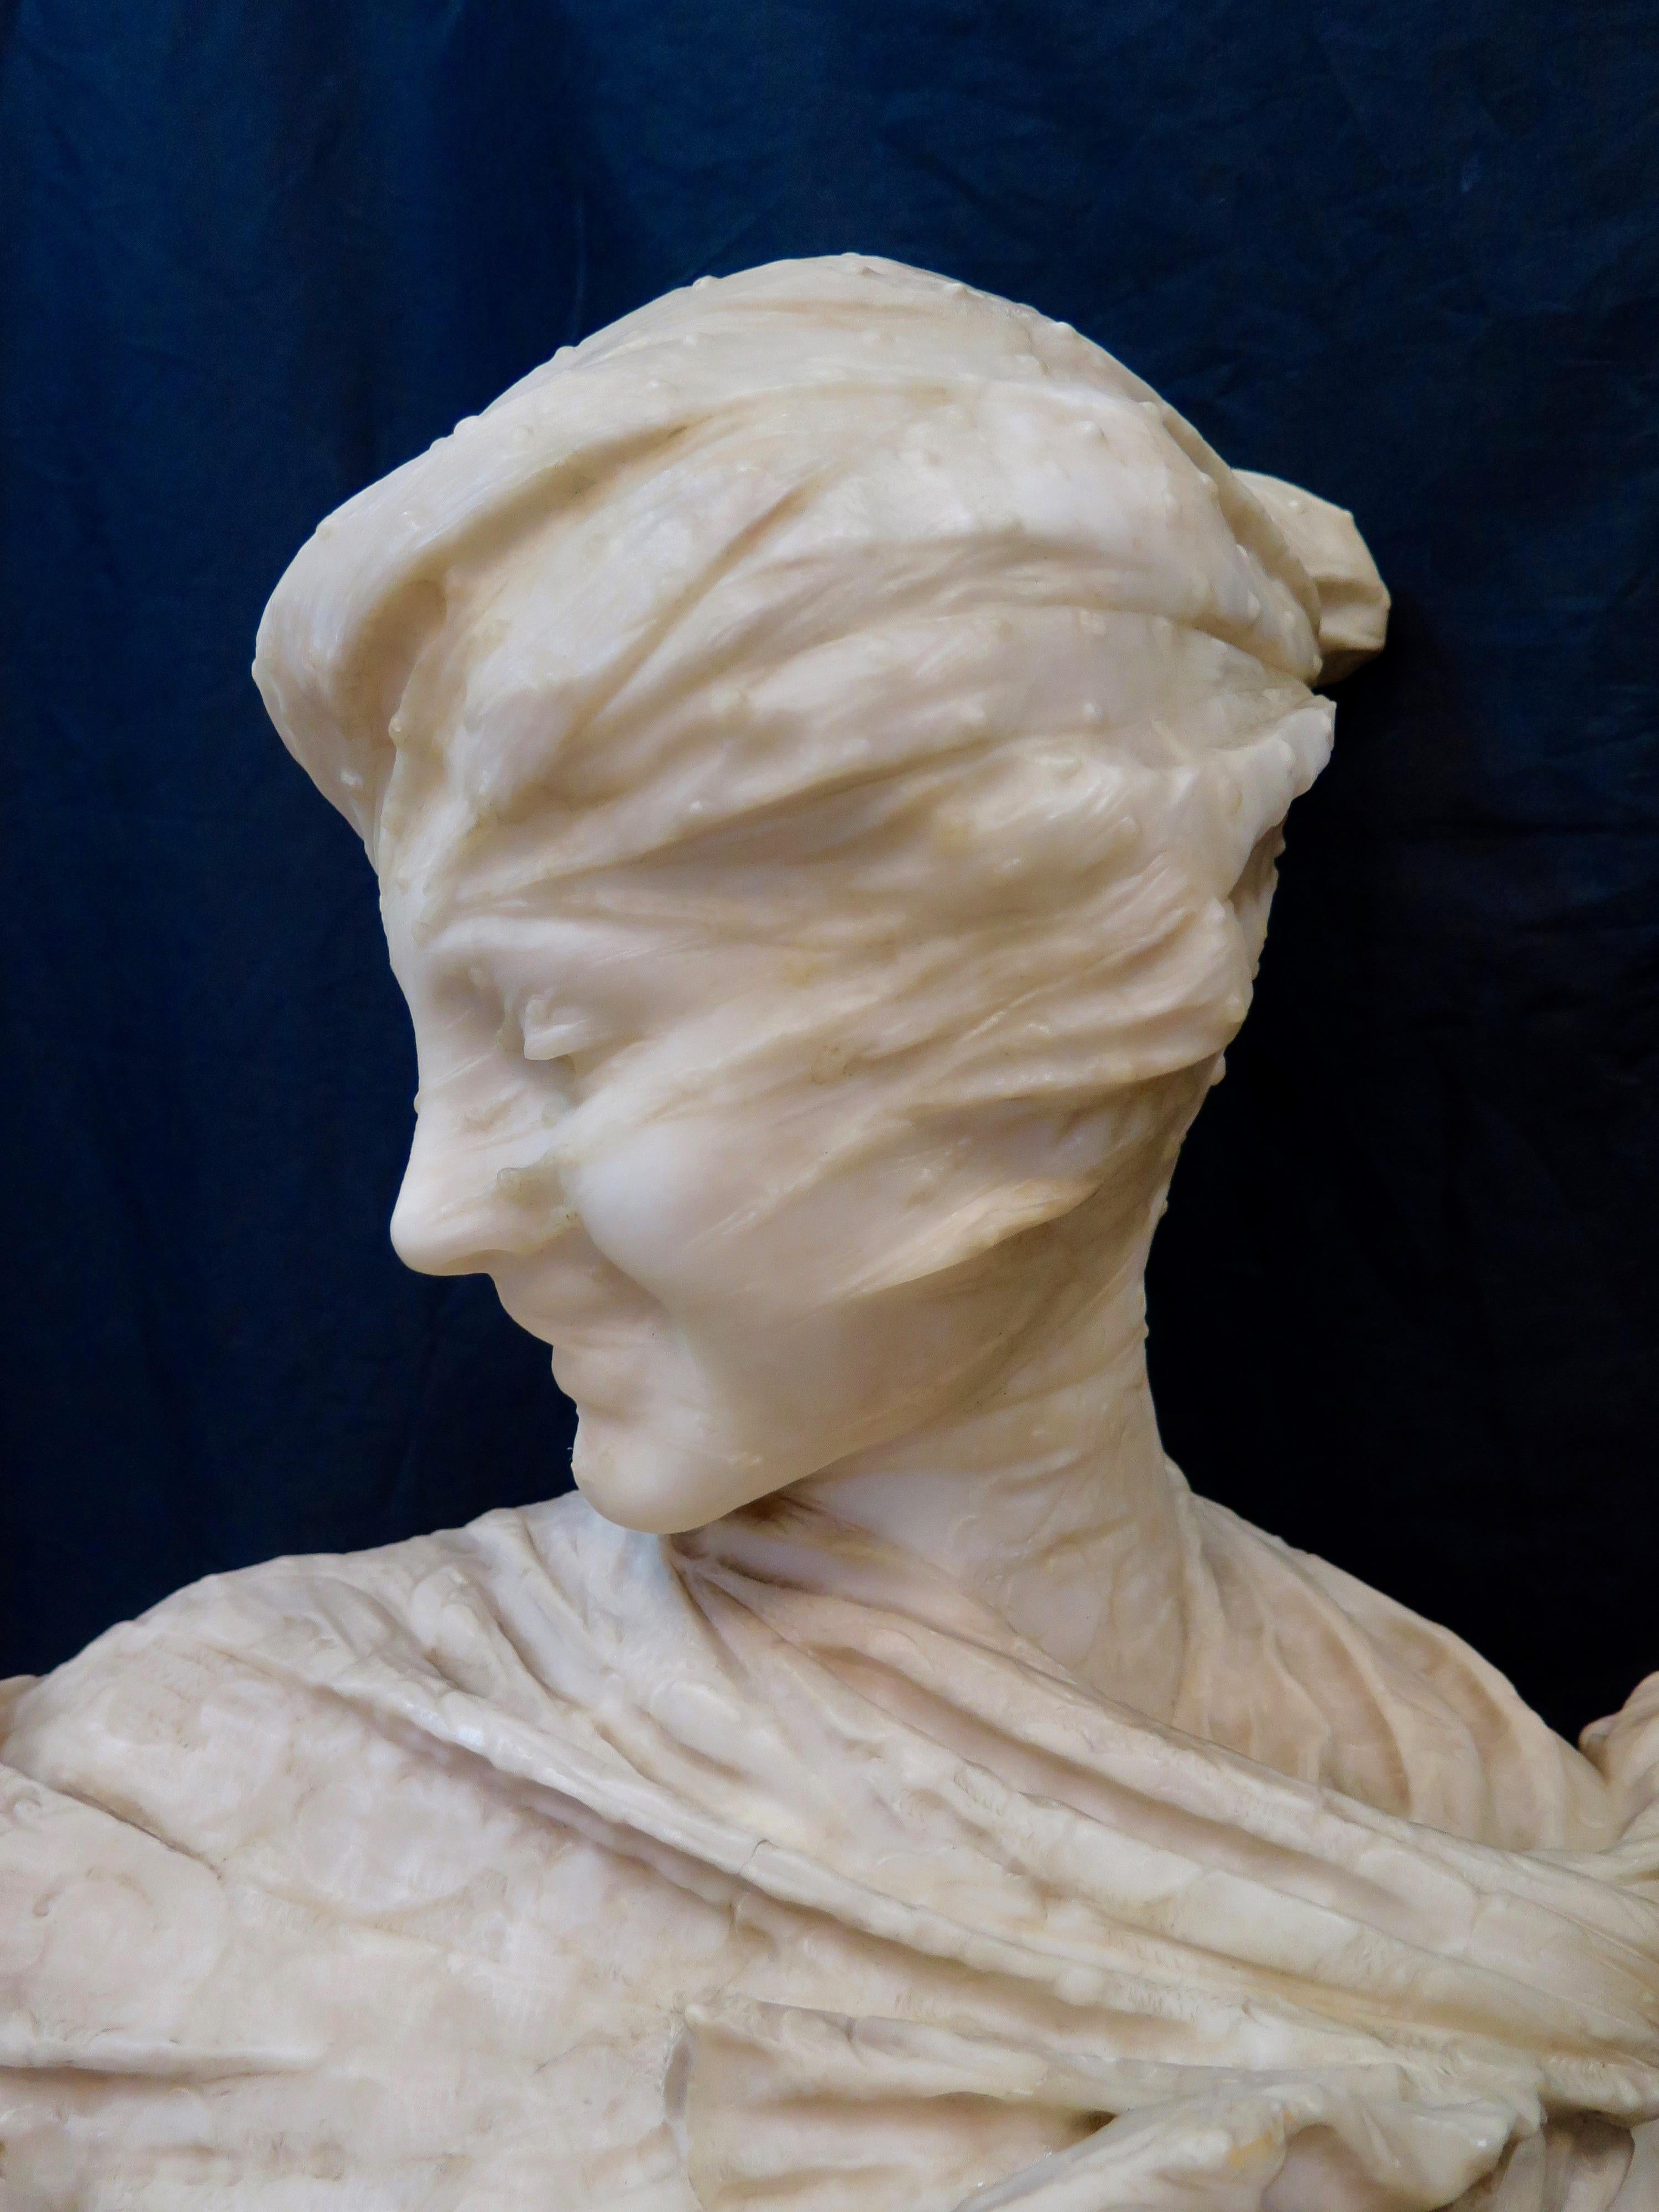 Diese handgeschnitzte italienische Alabasterskulptur aus dem späten 19. Jahrhundert ist mit E. Fiaschi signiert. Diese exquisite Darstellung einer modischen Dame trägt einen engen, durchsichtigen Schleier, der ihr Gesicht umhüllt. Fiaschis